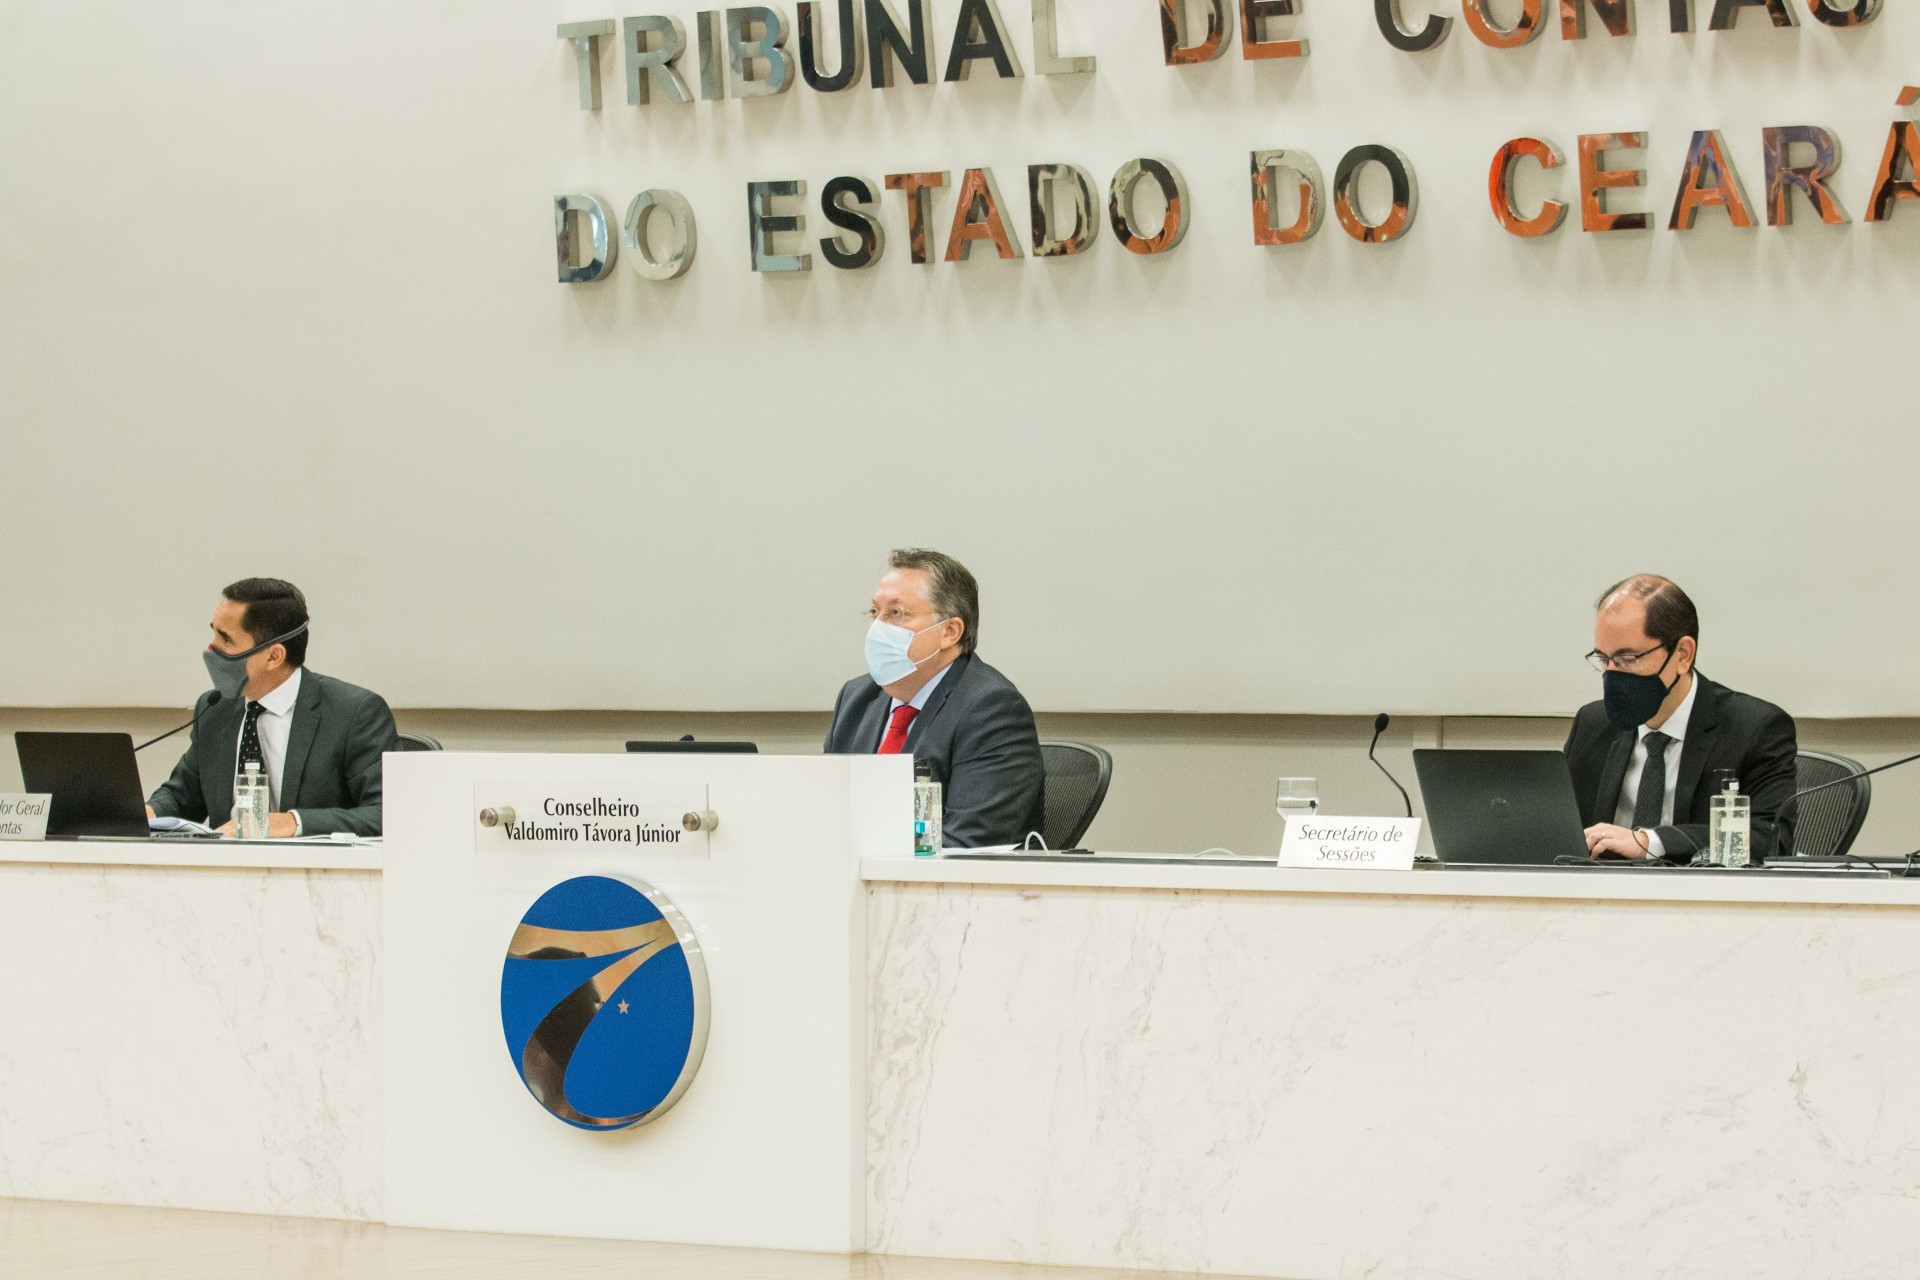  Tribunal de Contas do Estado - TCE (Foto: Fernanda Barros/ O POVO) (Foto: Fernanda Barros)